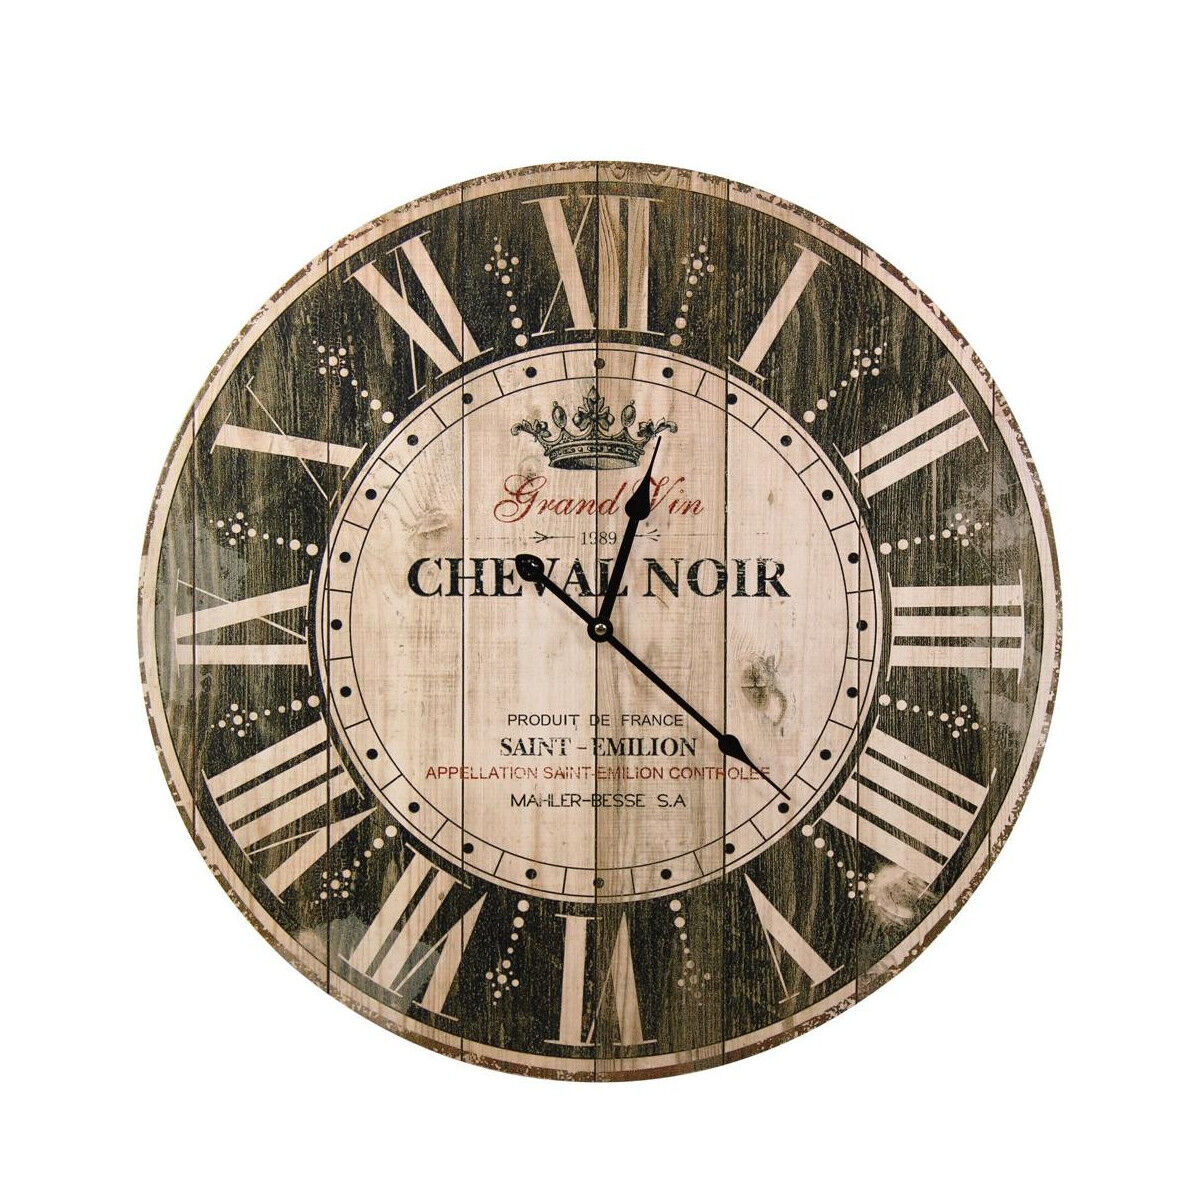 Décoration d'fois Horloge Ancienne Murale Grand Vin Cheval Noir Marron 58cm - Bois